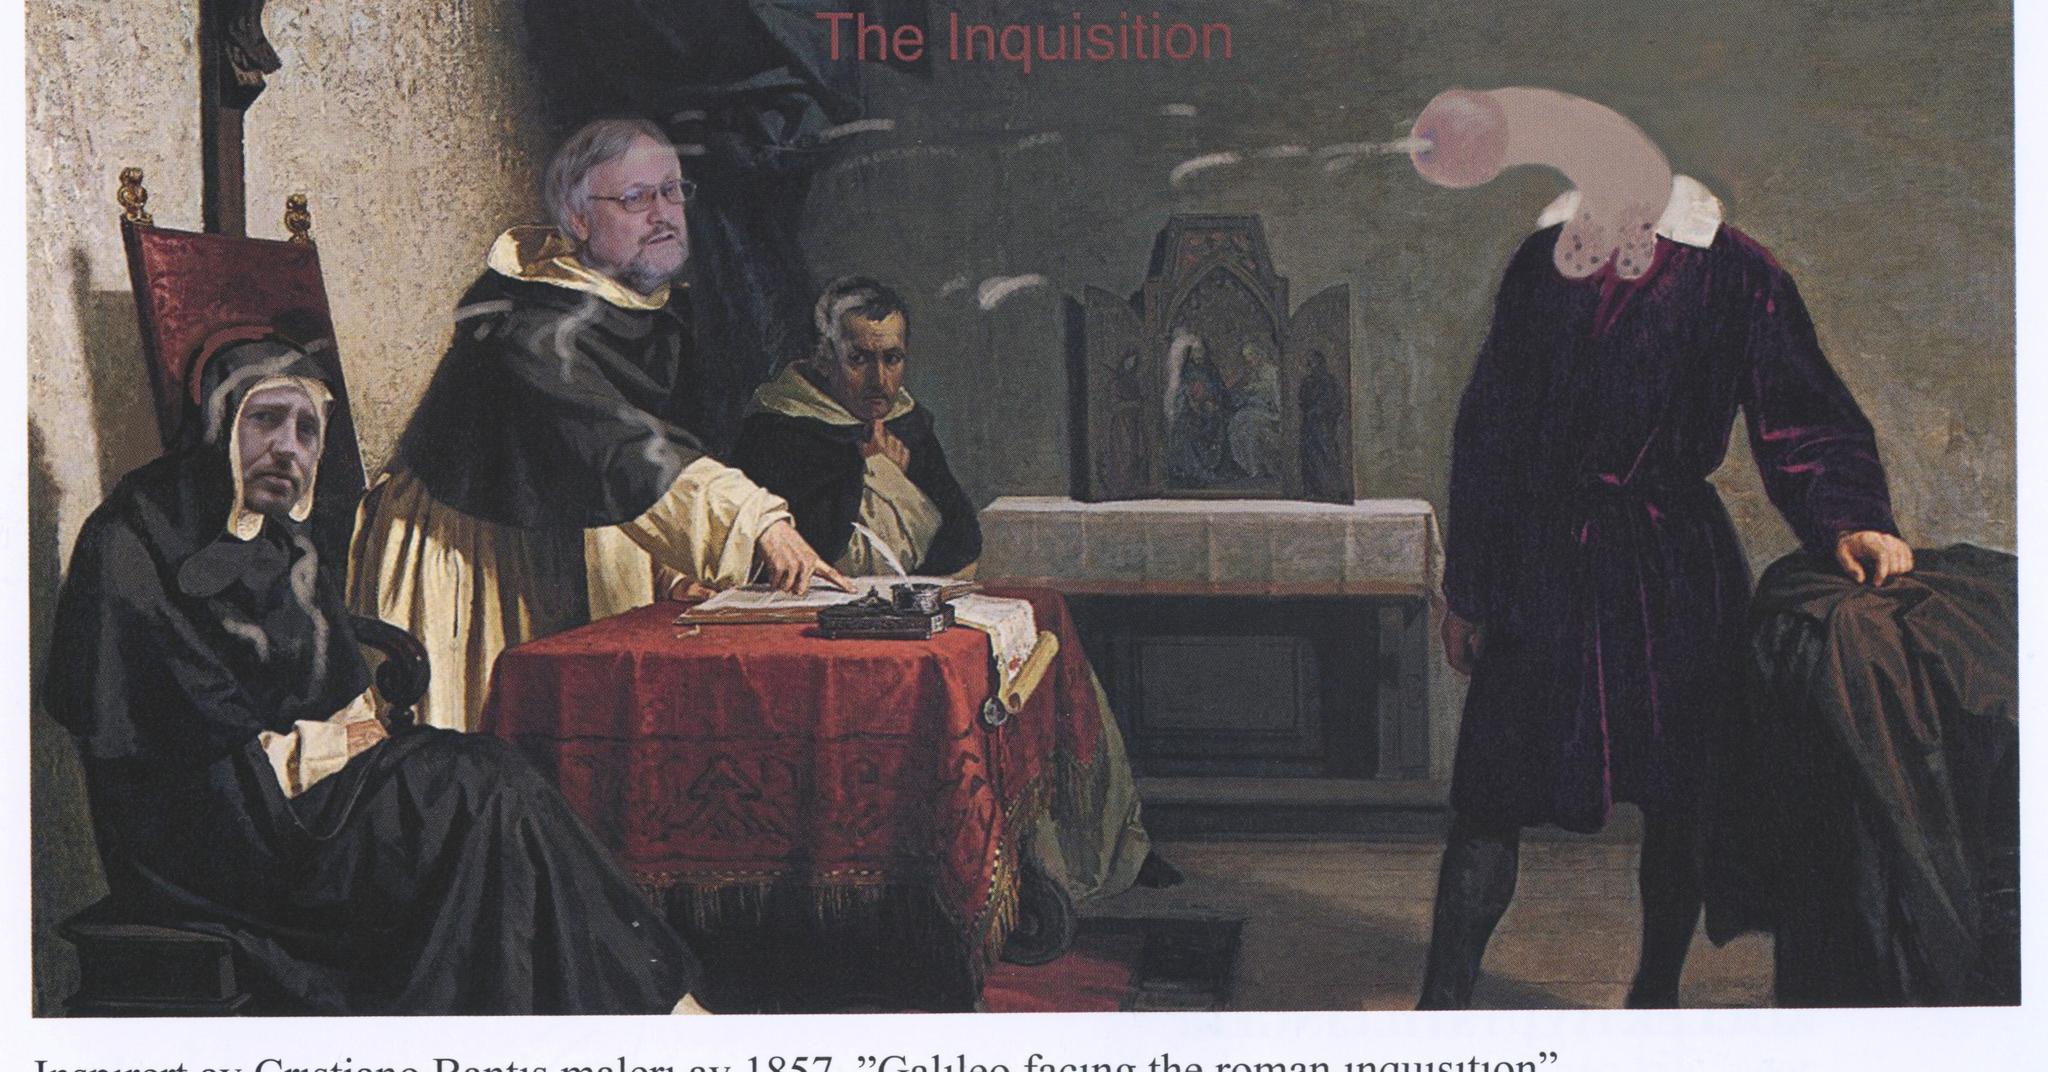 Inspirert av Christiano Bantis maleri av Galileo som møter inkvisisjonen, her med Lars Gule som hovedinkvisitor. Typisk for en av Knarviks grunnideer: Ekte fotografiske portretter montert inn i obskøne situasjoner.